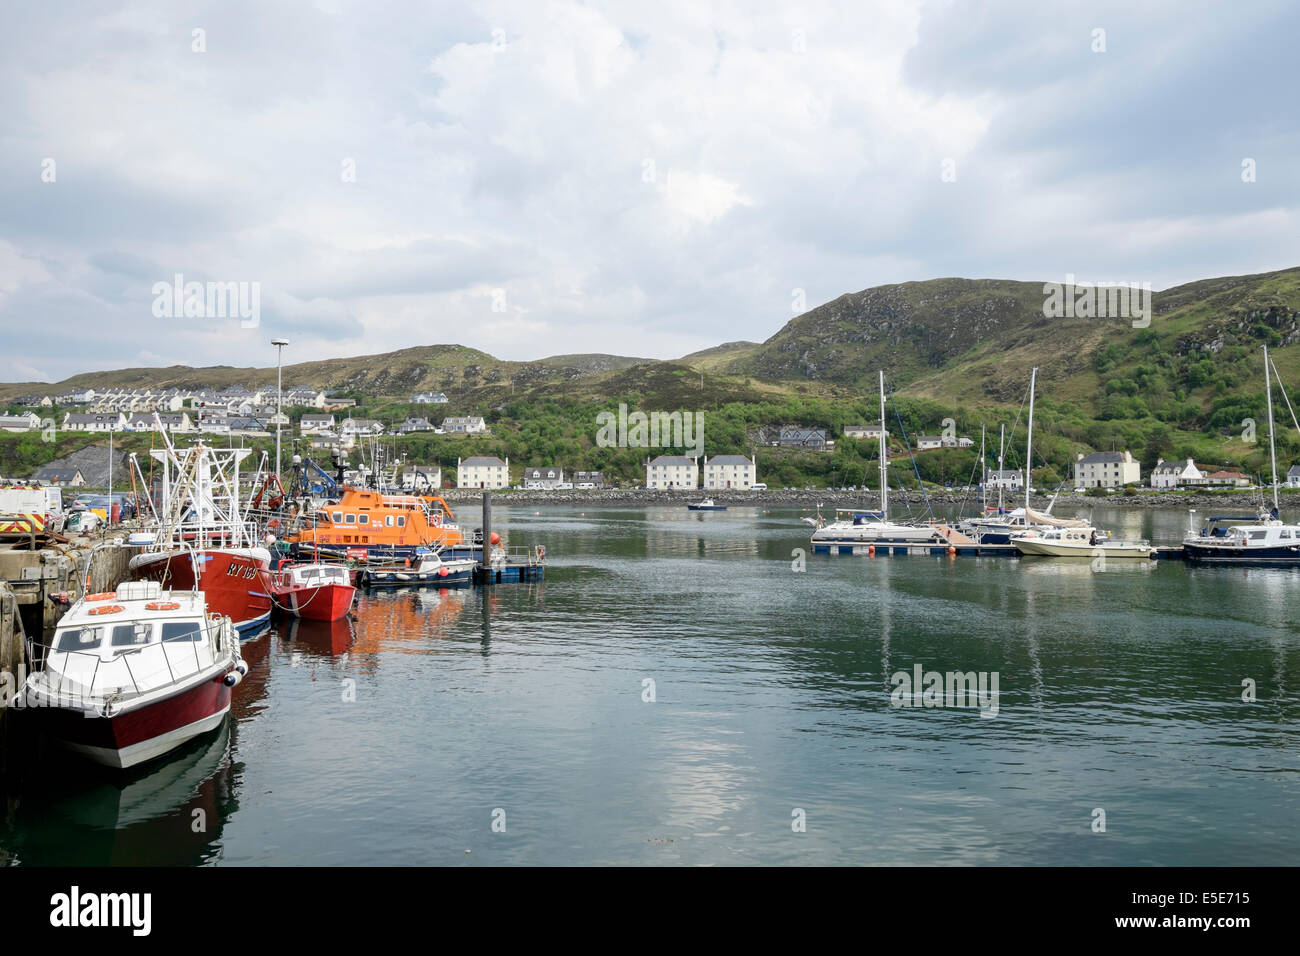 Barche e RNLI scialuppa di salvataggio ormeggiata nel porto di pescatori a Scottish west coast. Mallaig, Highland, Scozia, Regno Unito, Gran Bretagna Foto Stock